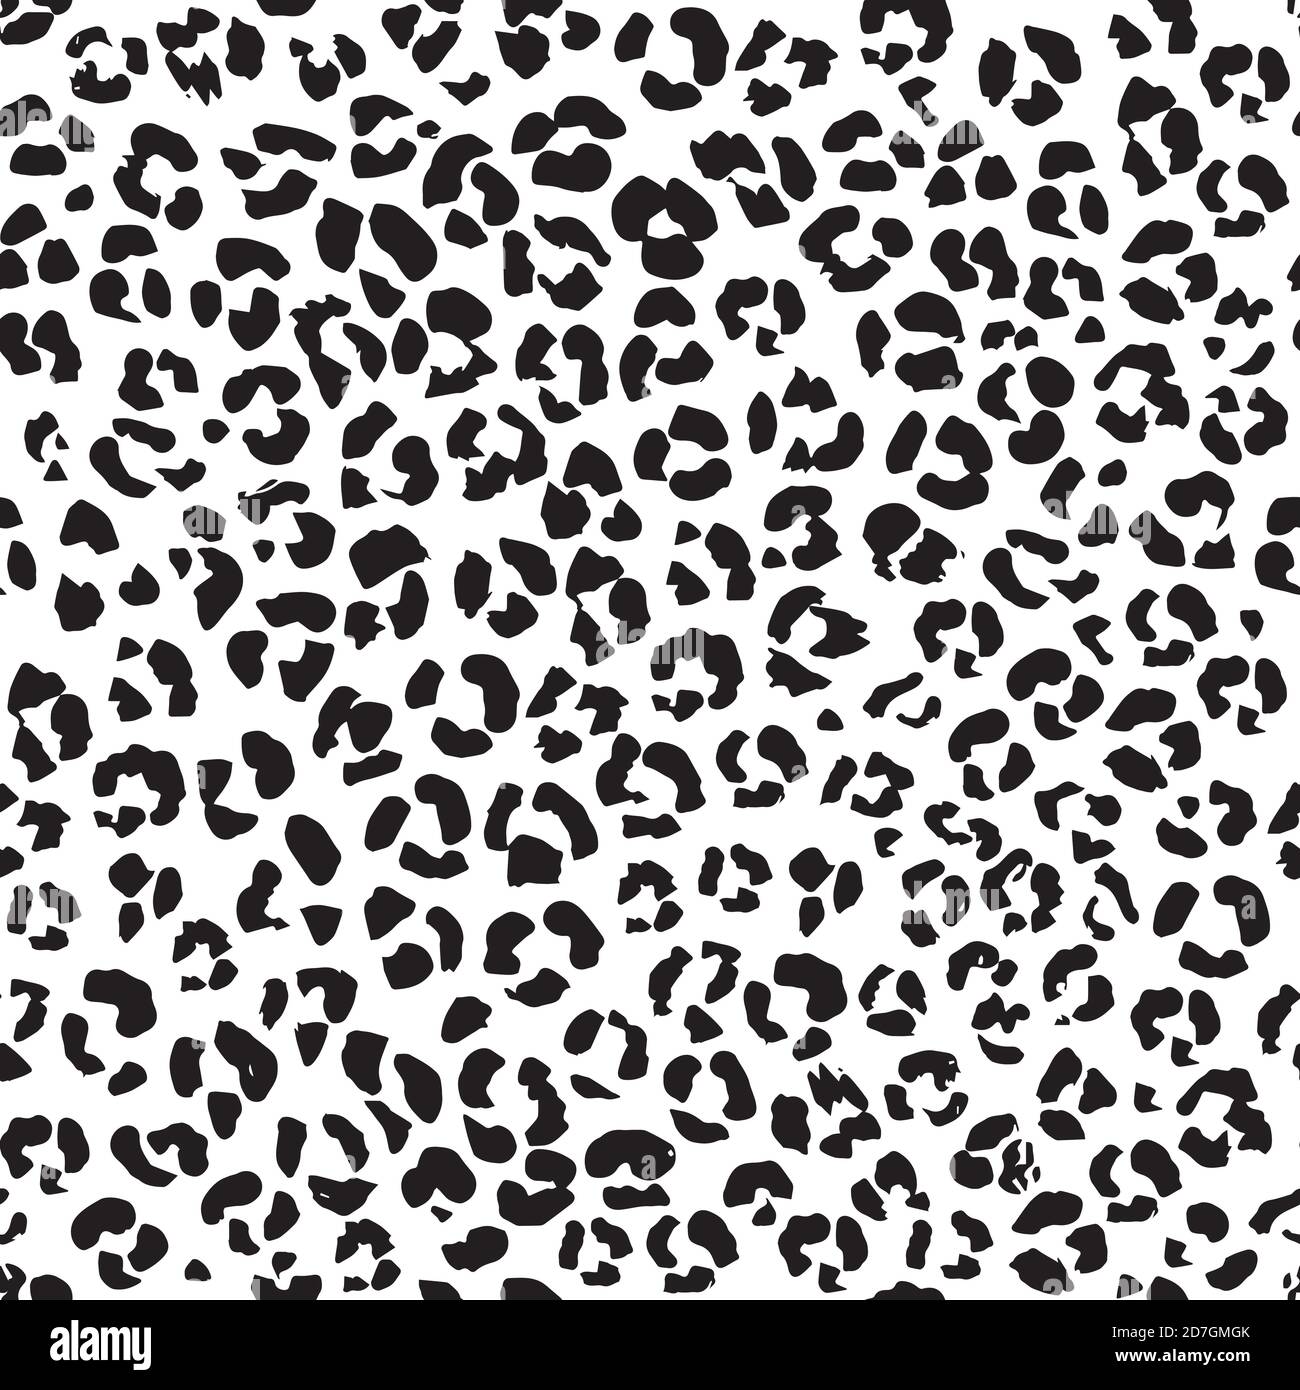 Design Mit Leopardenmuster Aus Tierhaut. Jaguar, Leopard, Gepard,  Pantherfell. Camouflage-Hintergrund. Lizenzfreie Fotos, Bilder und Stock  Fotografie. Image 192696911.